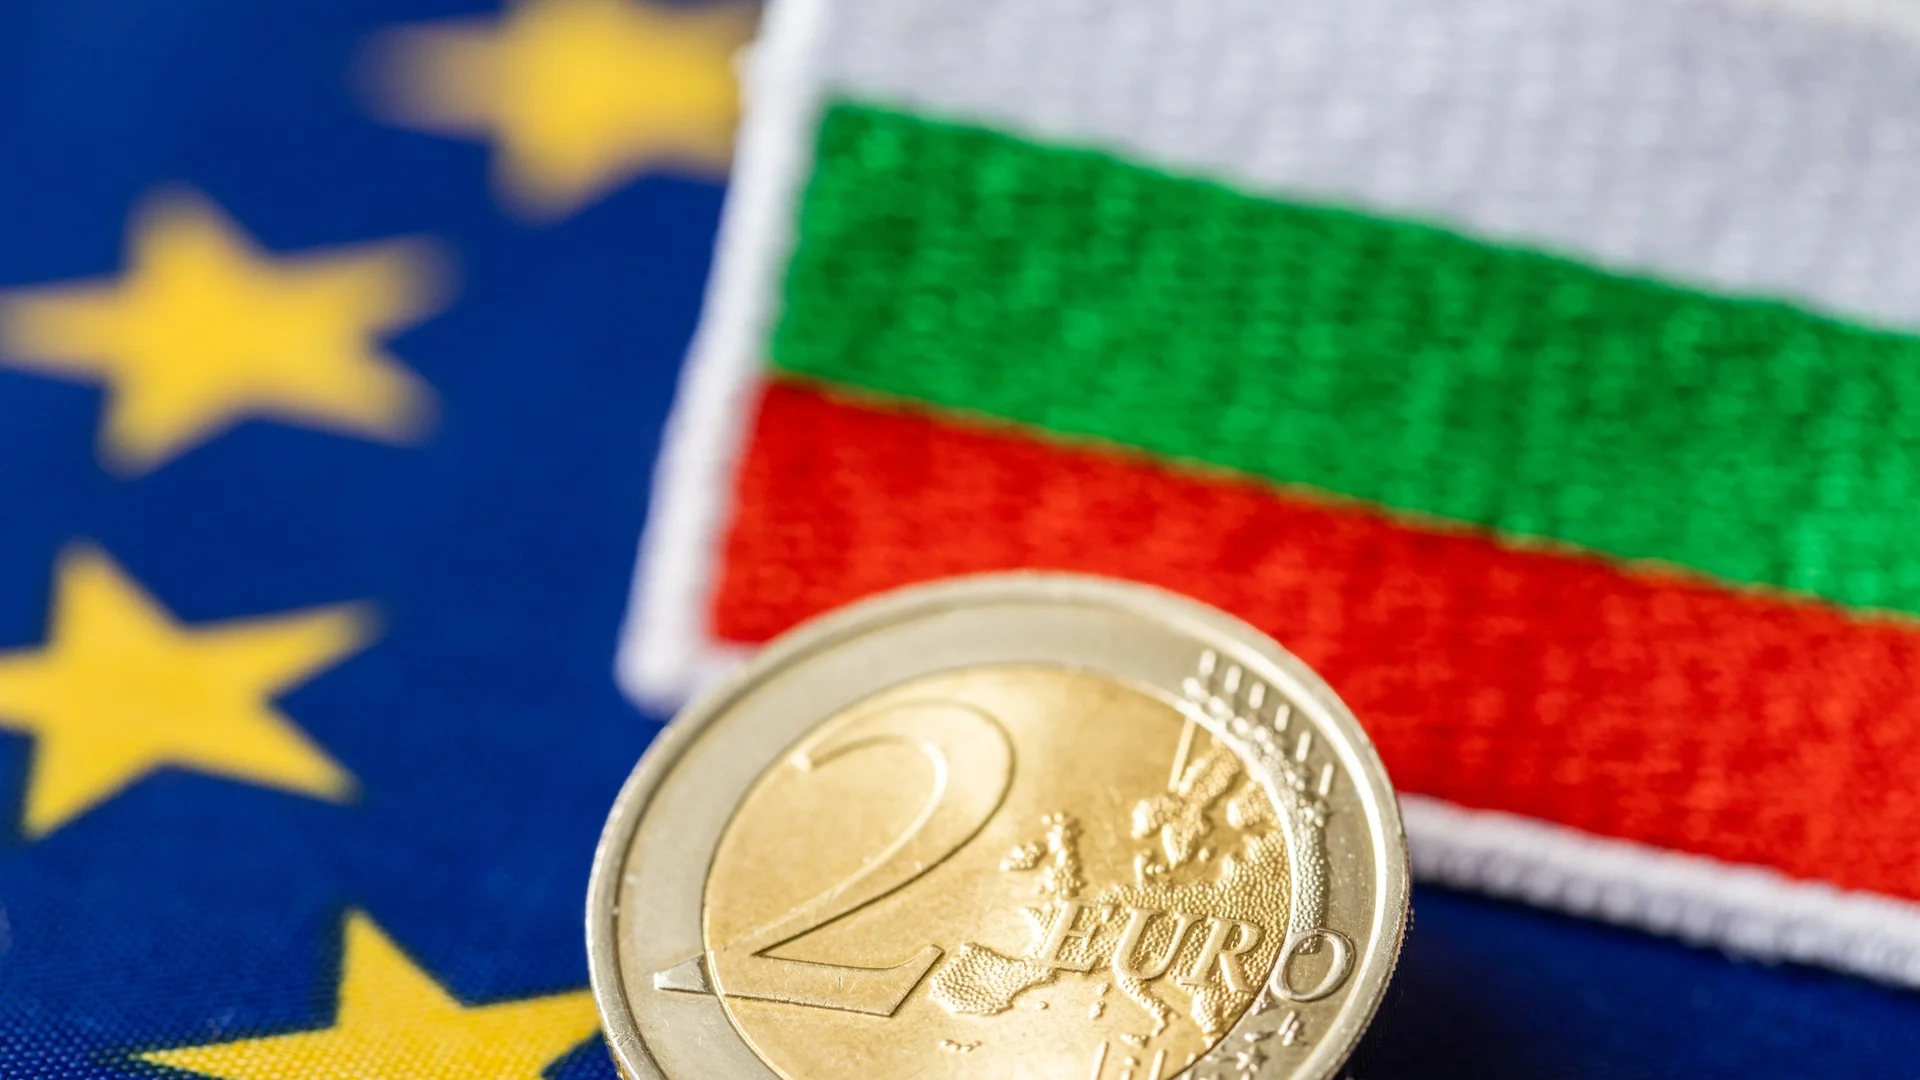 ЕК с нова икономическа прогноза за България: Близо ли сме до еврозоната?